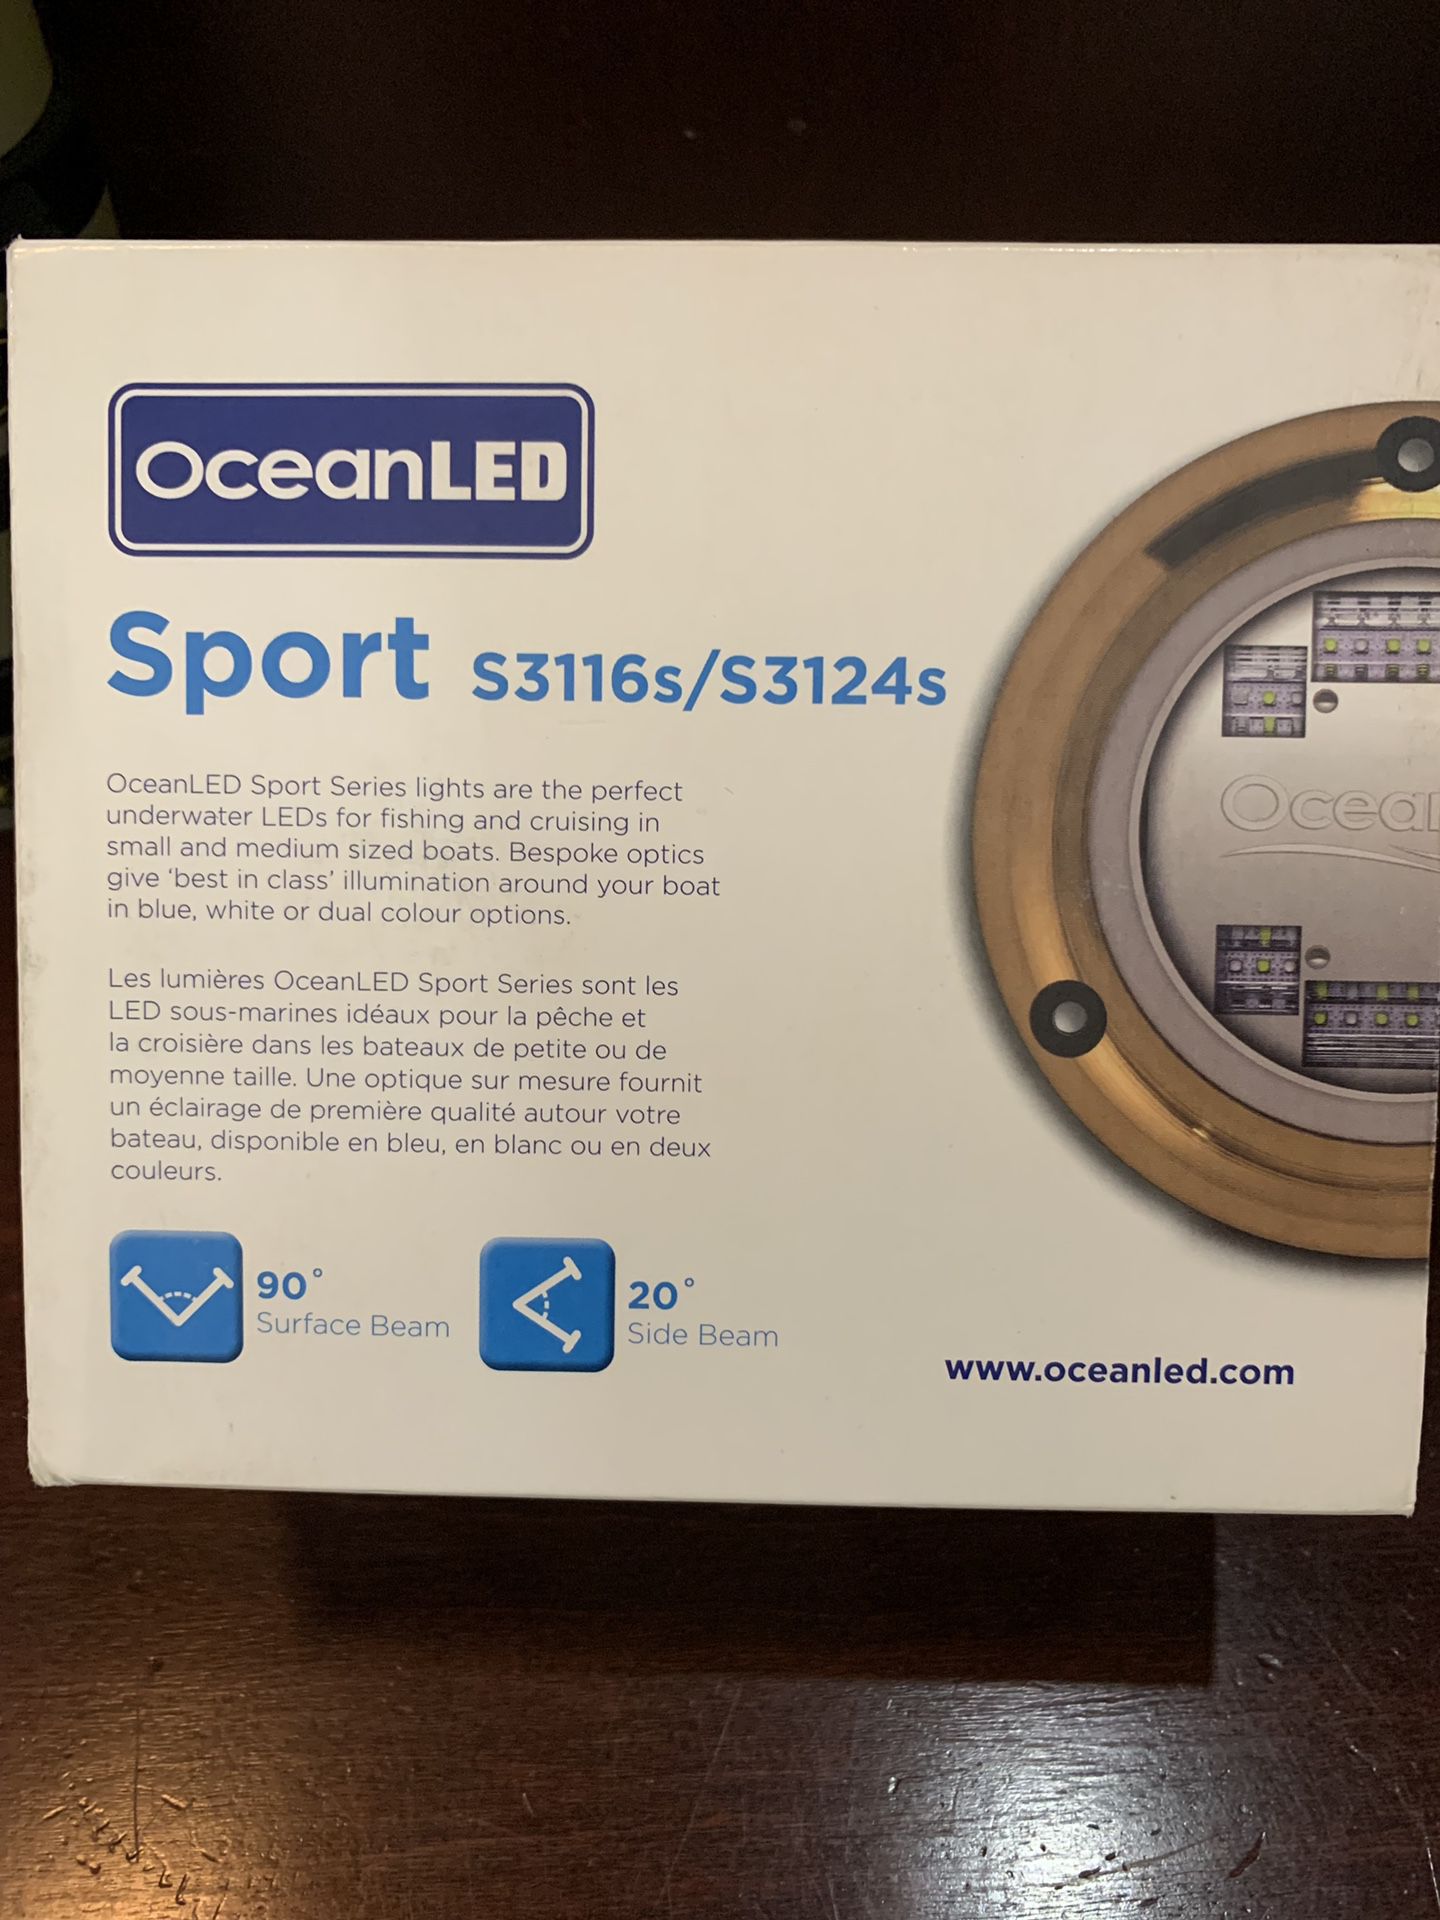 OceanLED Sport S3116s/S3124s Boat Lights